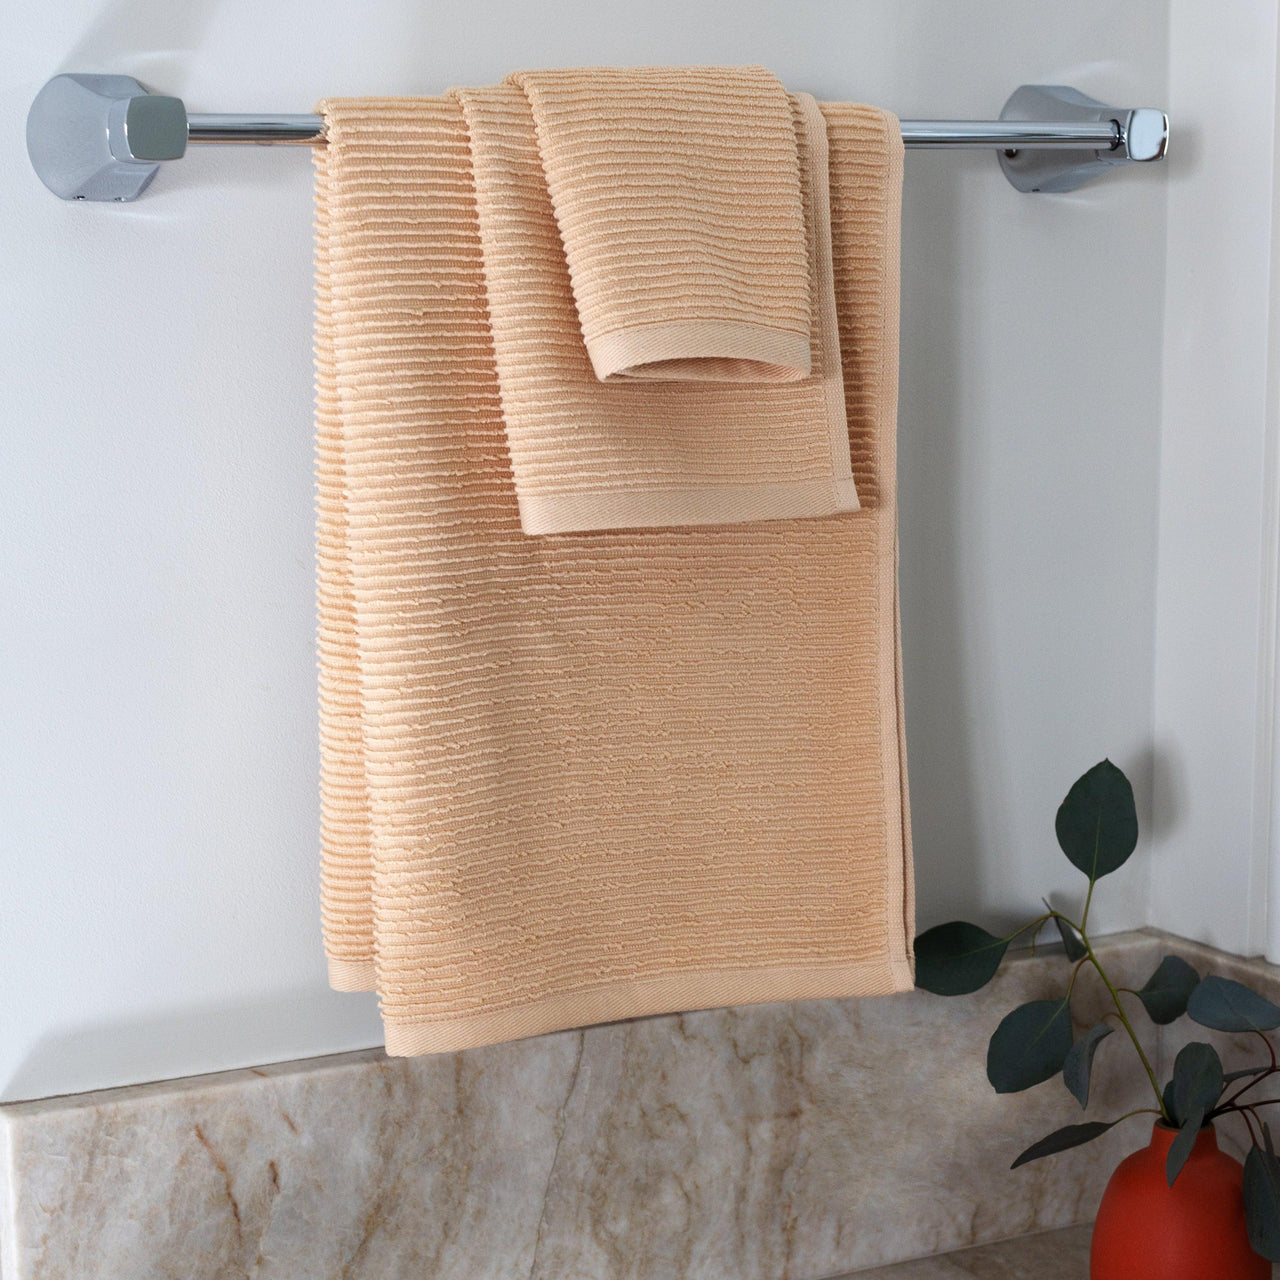 The Soft Rib Towel